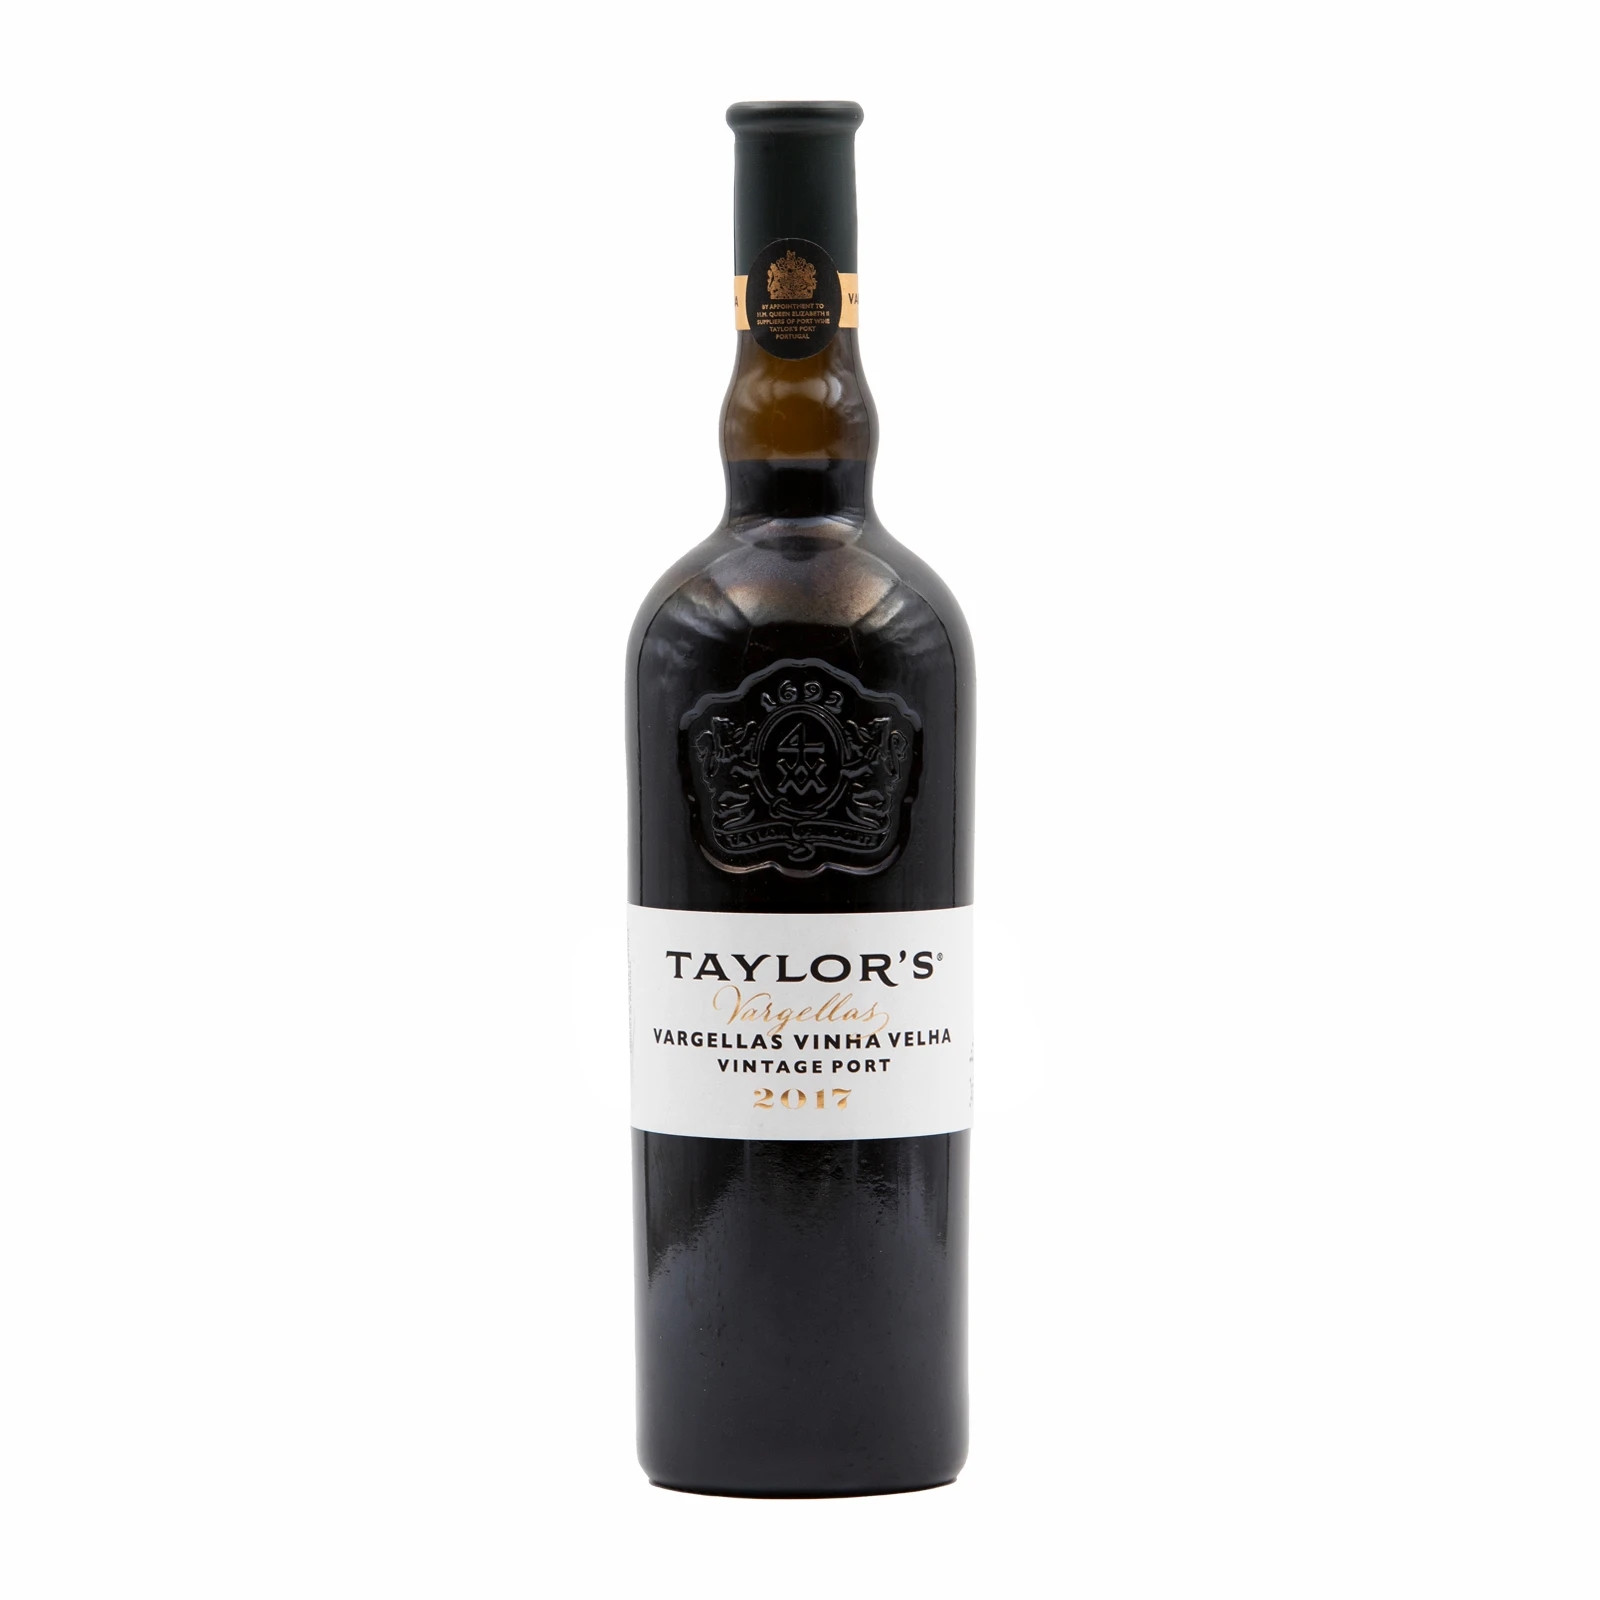 Taylors Vargellas Old Vines Vintage Port 2017